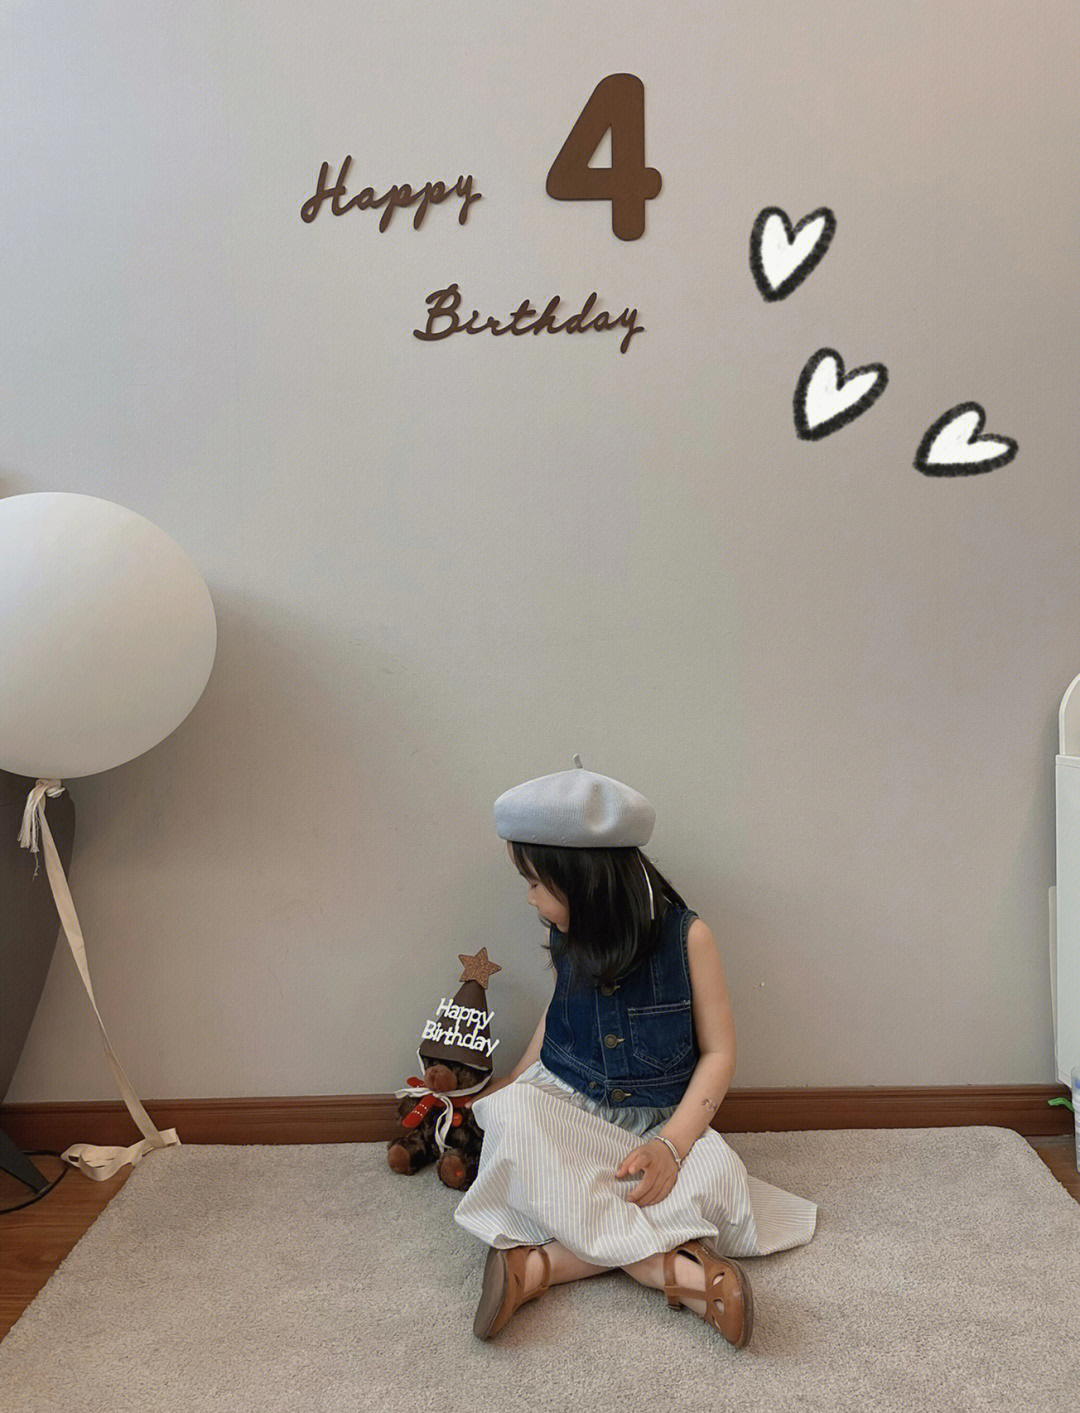 一个巧克力蛋黄派,一个生日帽点上一个可爱的93生日蜡烛手机后置